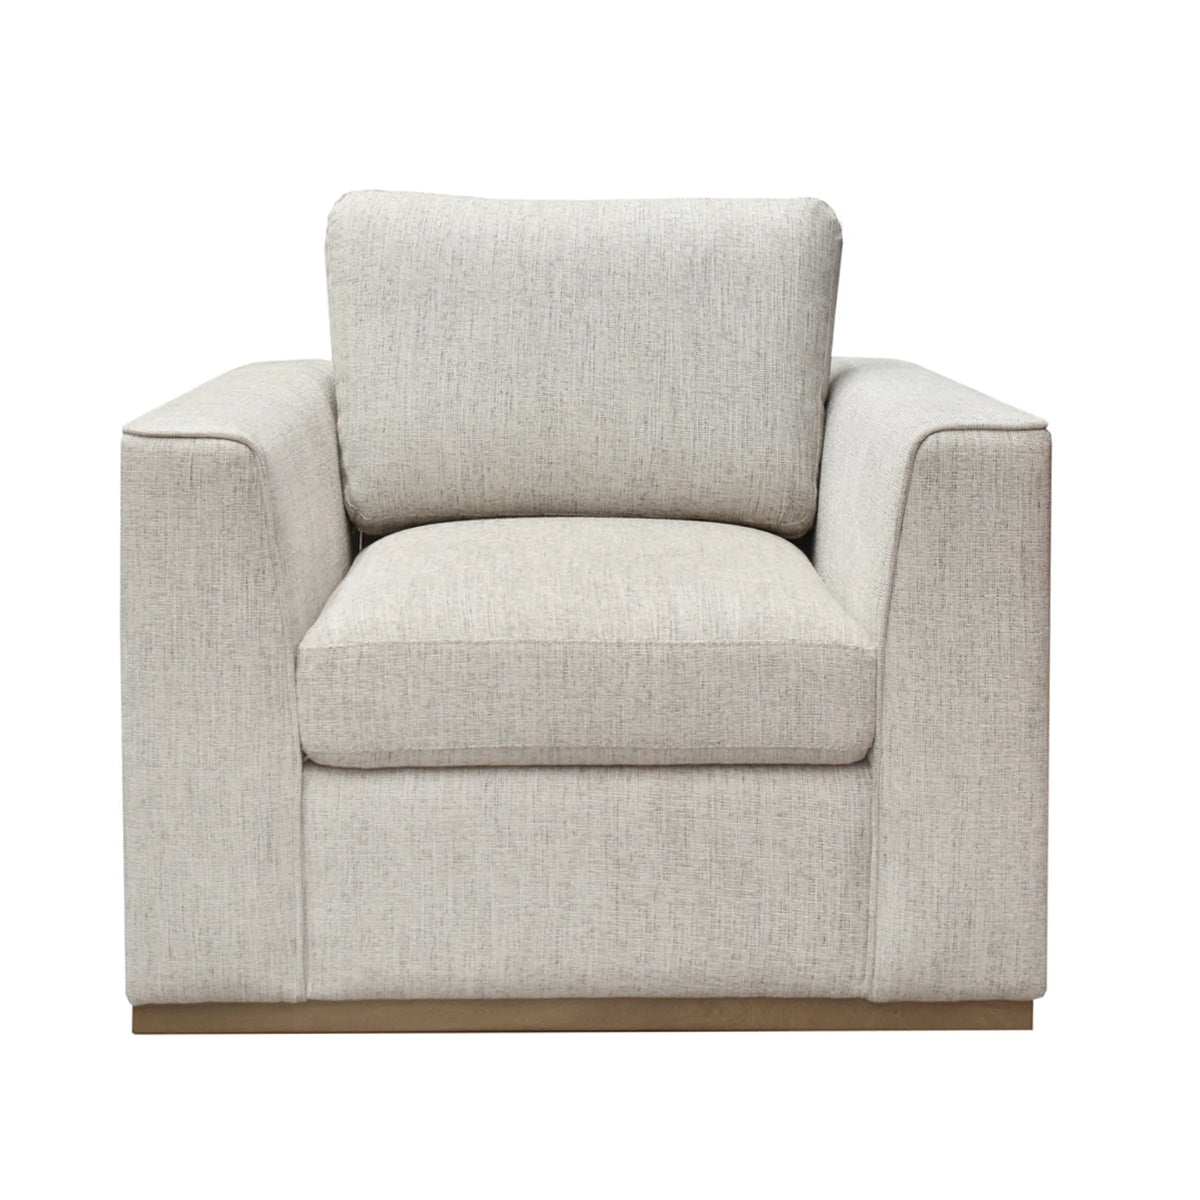 Decorah Linen Accent Chair